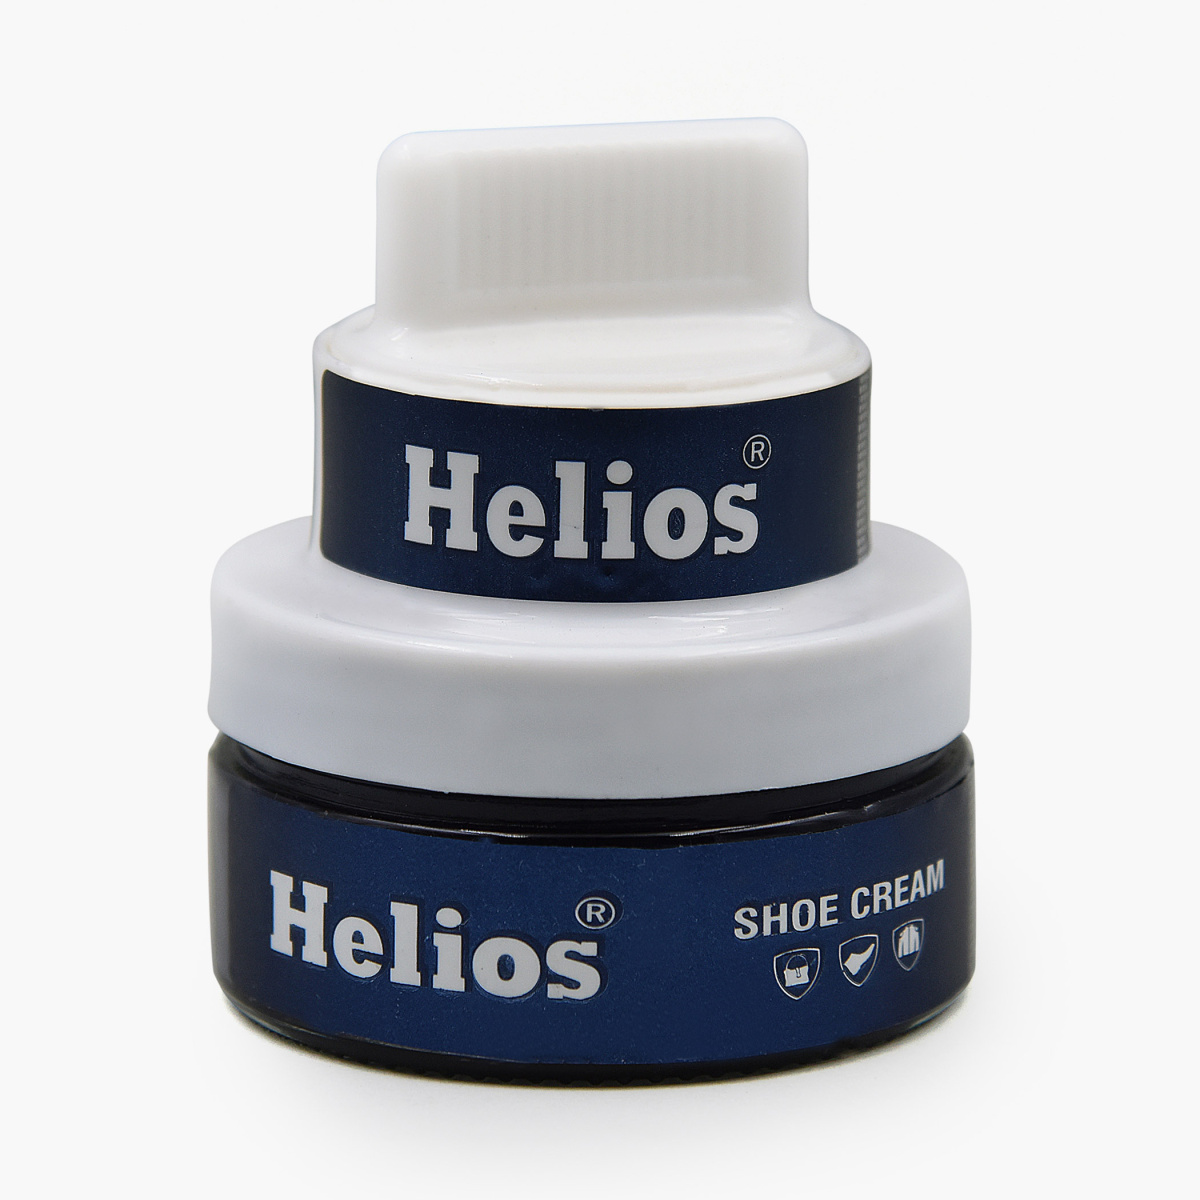 HELIOS Shoe Cream